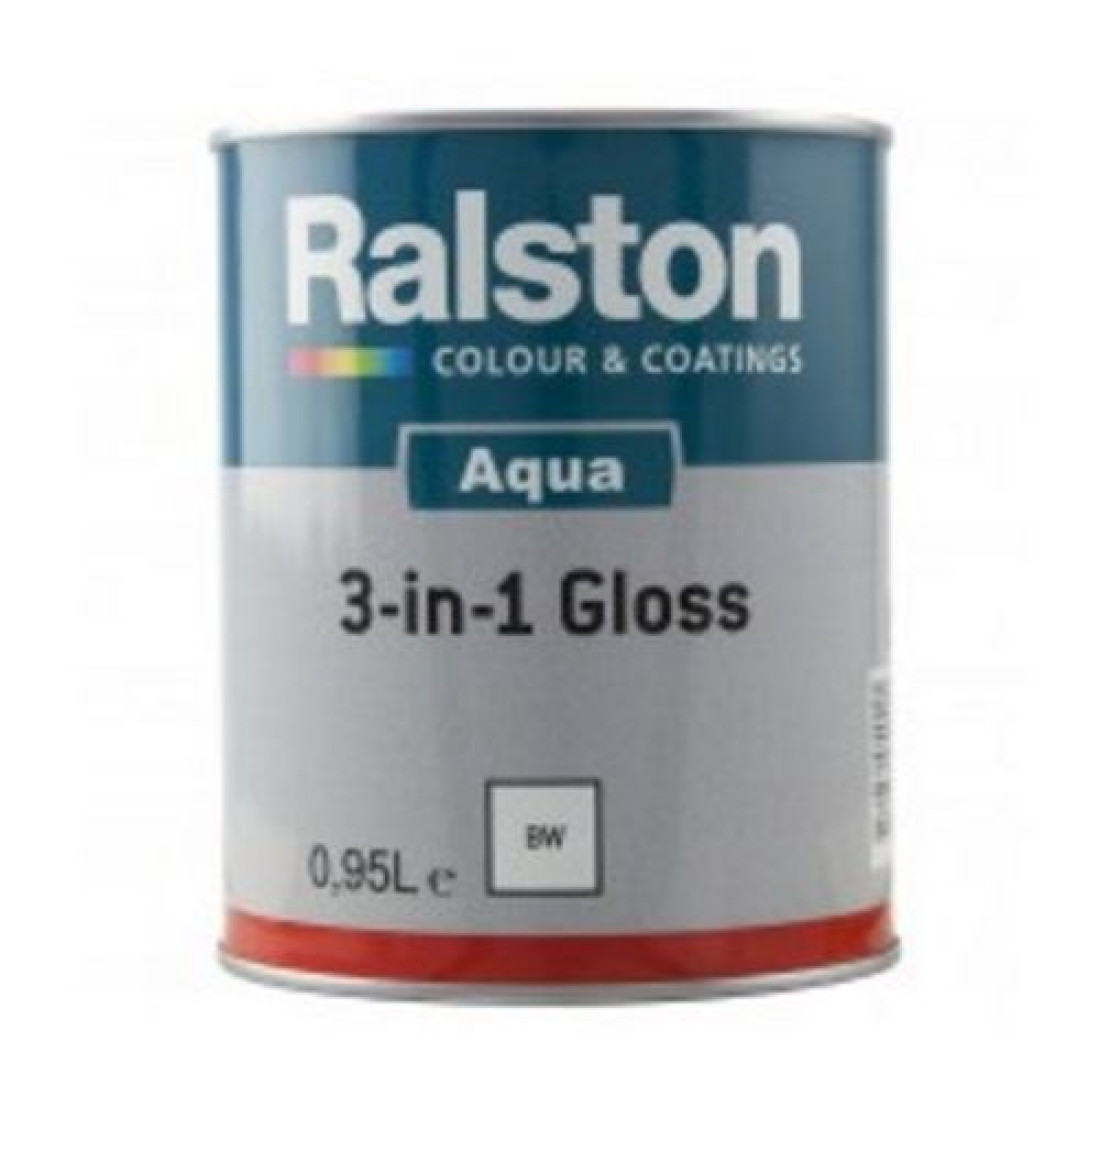 Ralston Aqua 3-in-1 Gloss